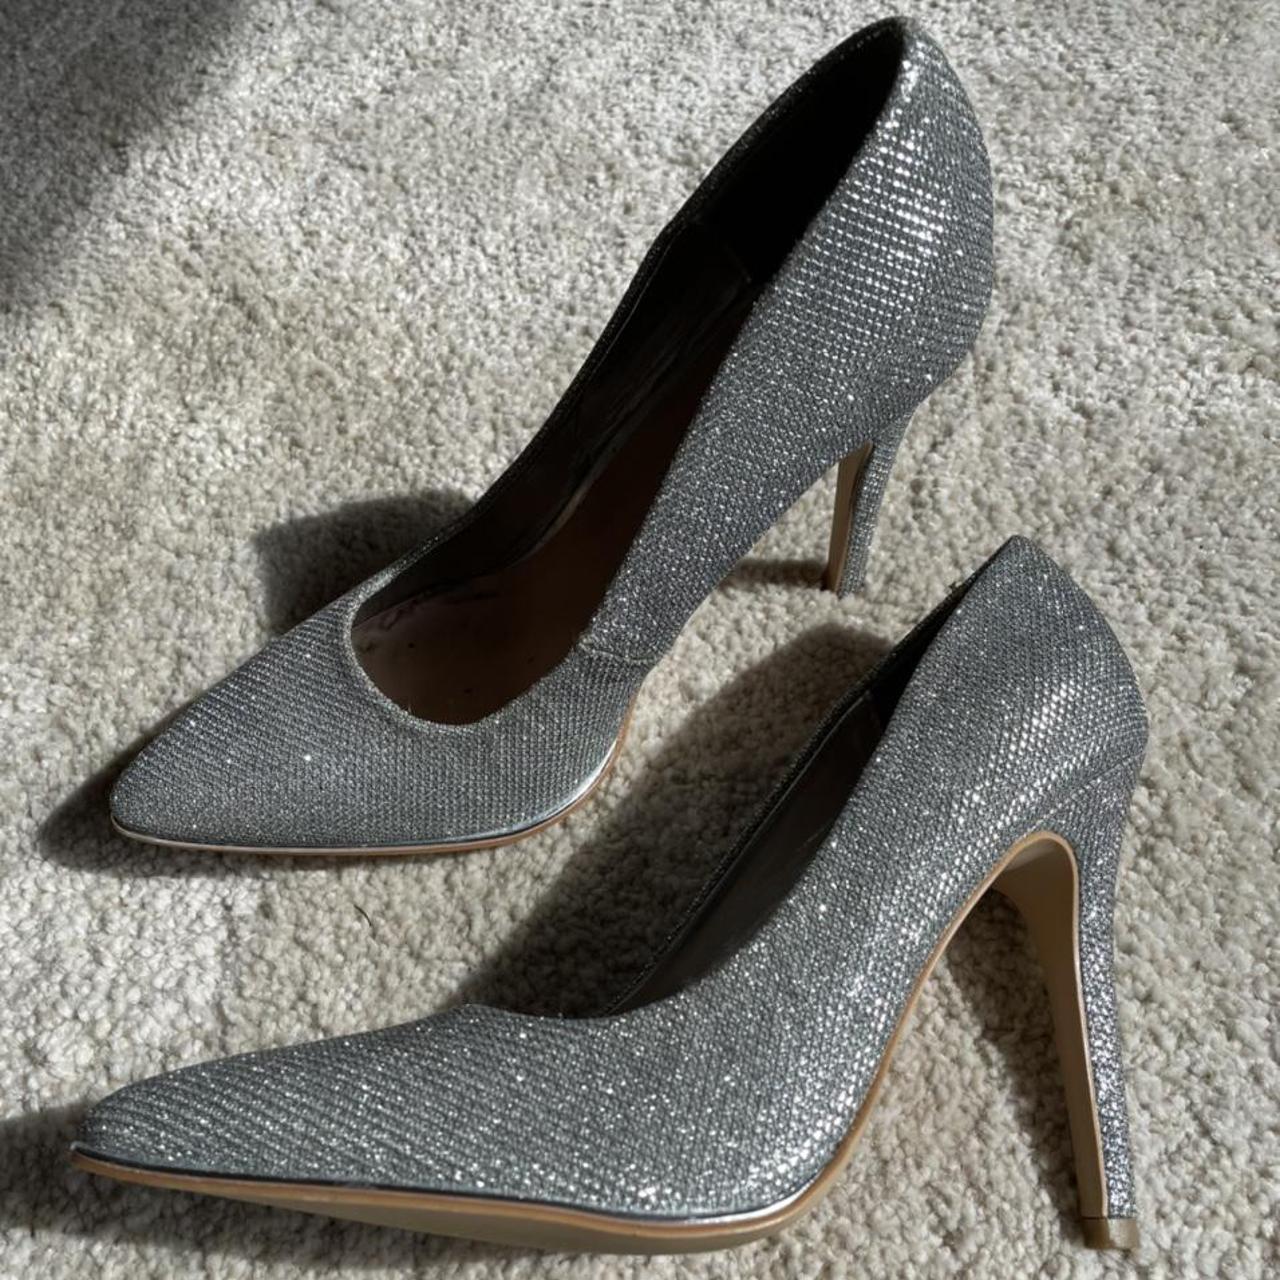 Silver Glitter New look Heels size 5 Worn once... - Depop